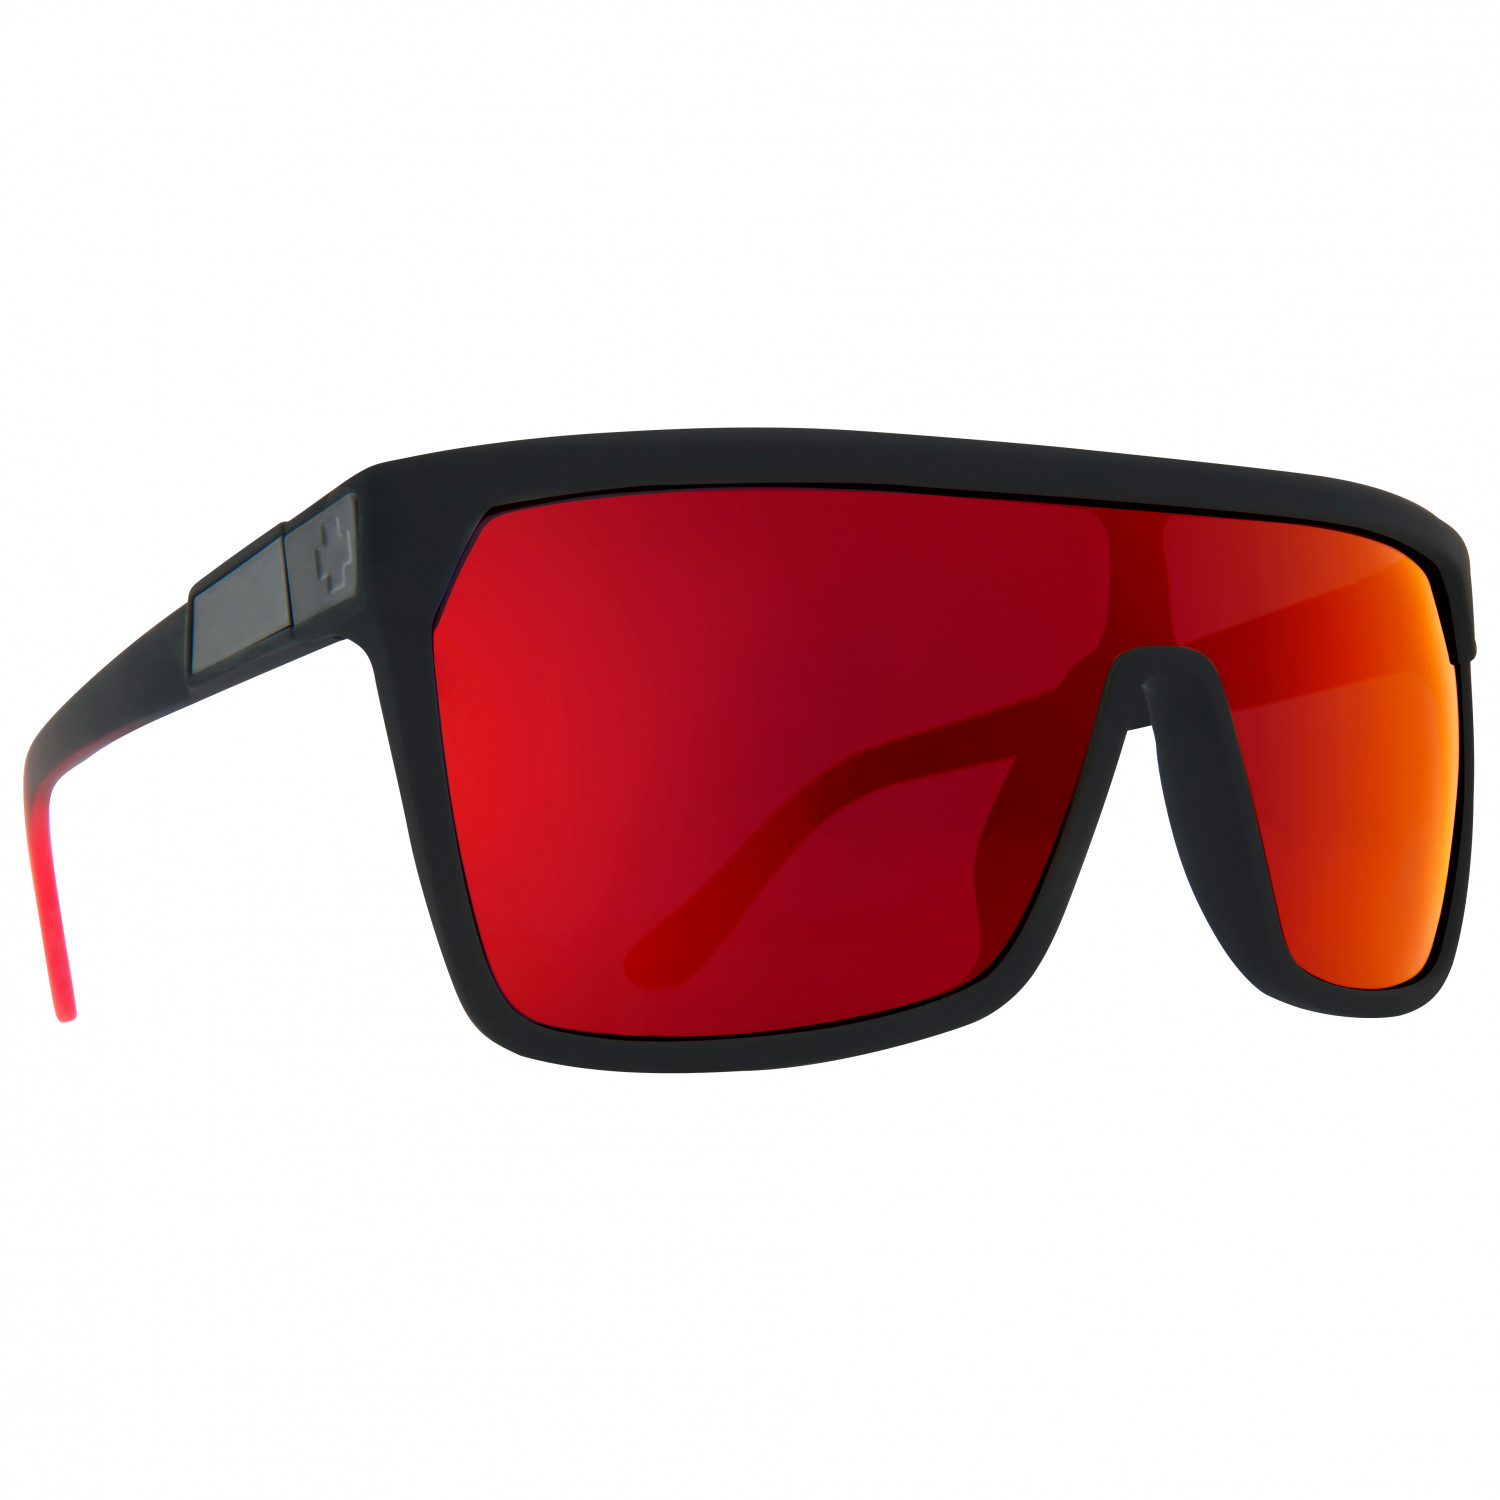 солнцезащитные очки доломит 2 0 tifosi optics цвет matte black smoke ac red clear Солнцезащитные очки Spy+ Flynn S3 (VLT 15%), цвет Soft Matte Black Red Fade